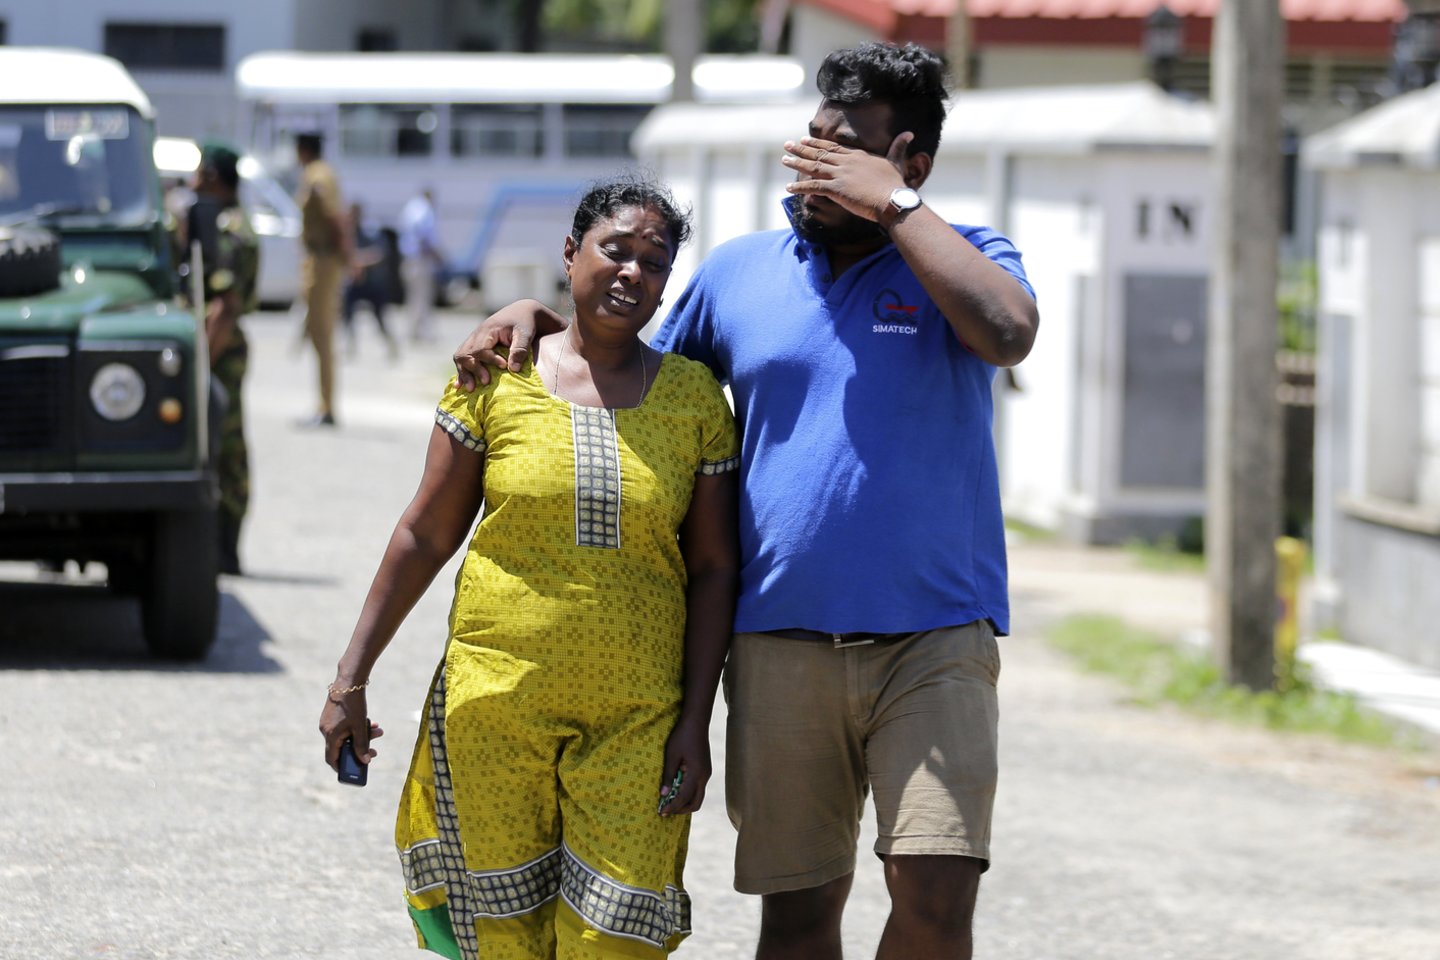   Šri Lankoje nugriaudėjo trys sprogimai<br>AP nuotr.